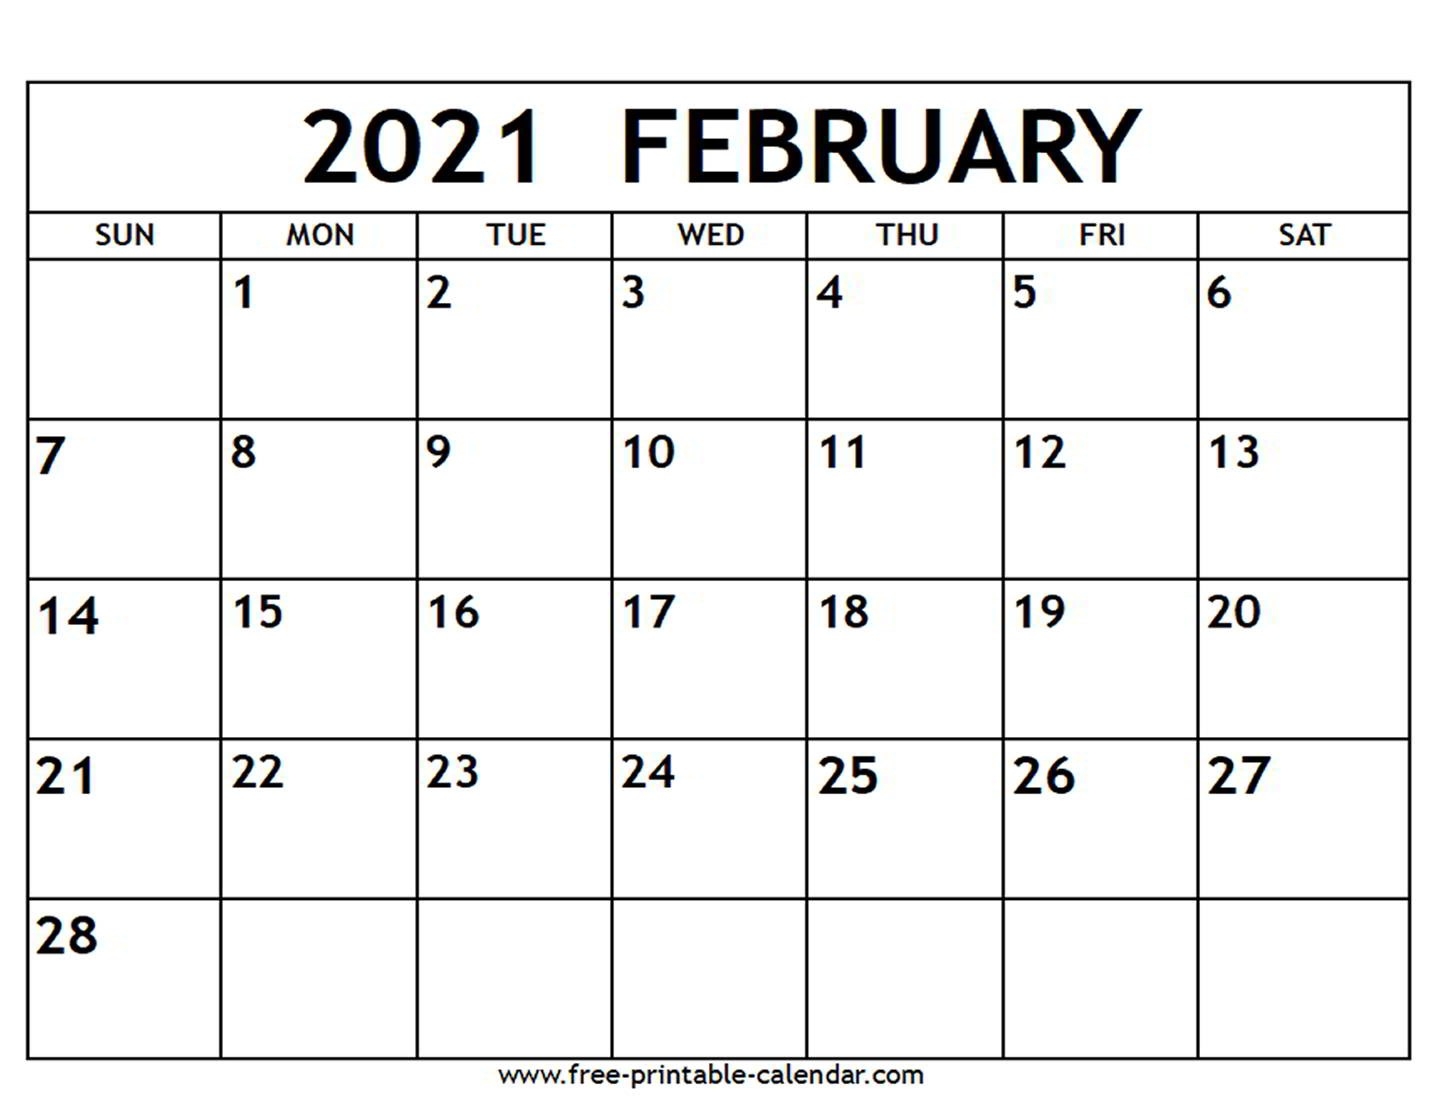 February 2021 Calendar - Free-Printable-Calendar-Print Calendar 2021 Free